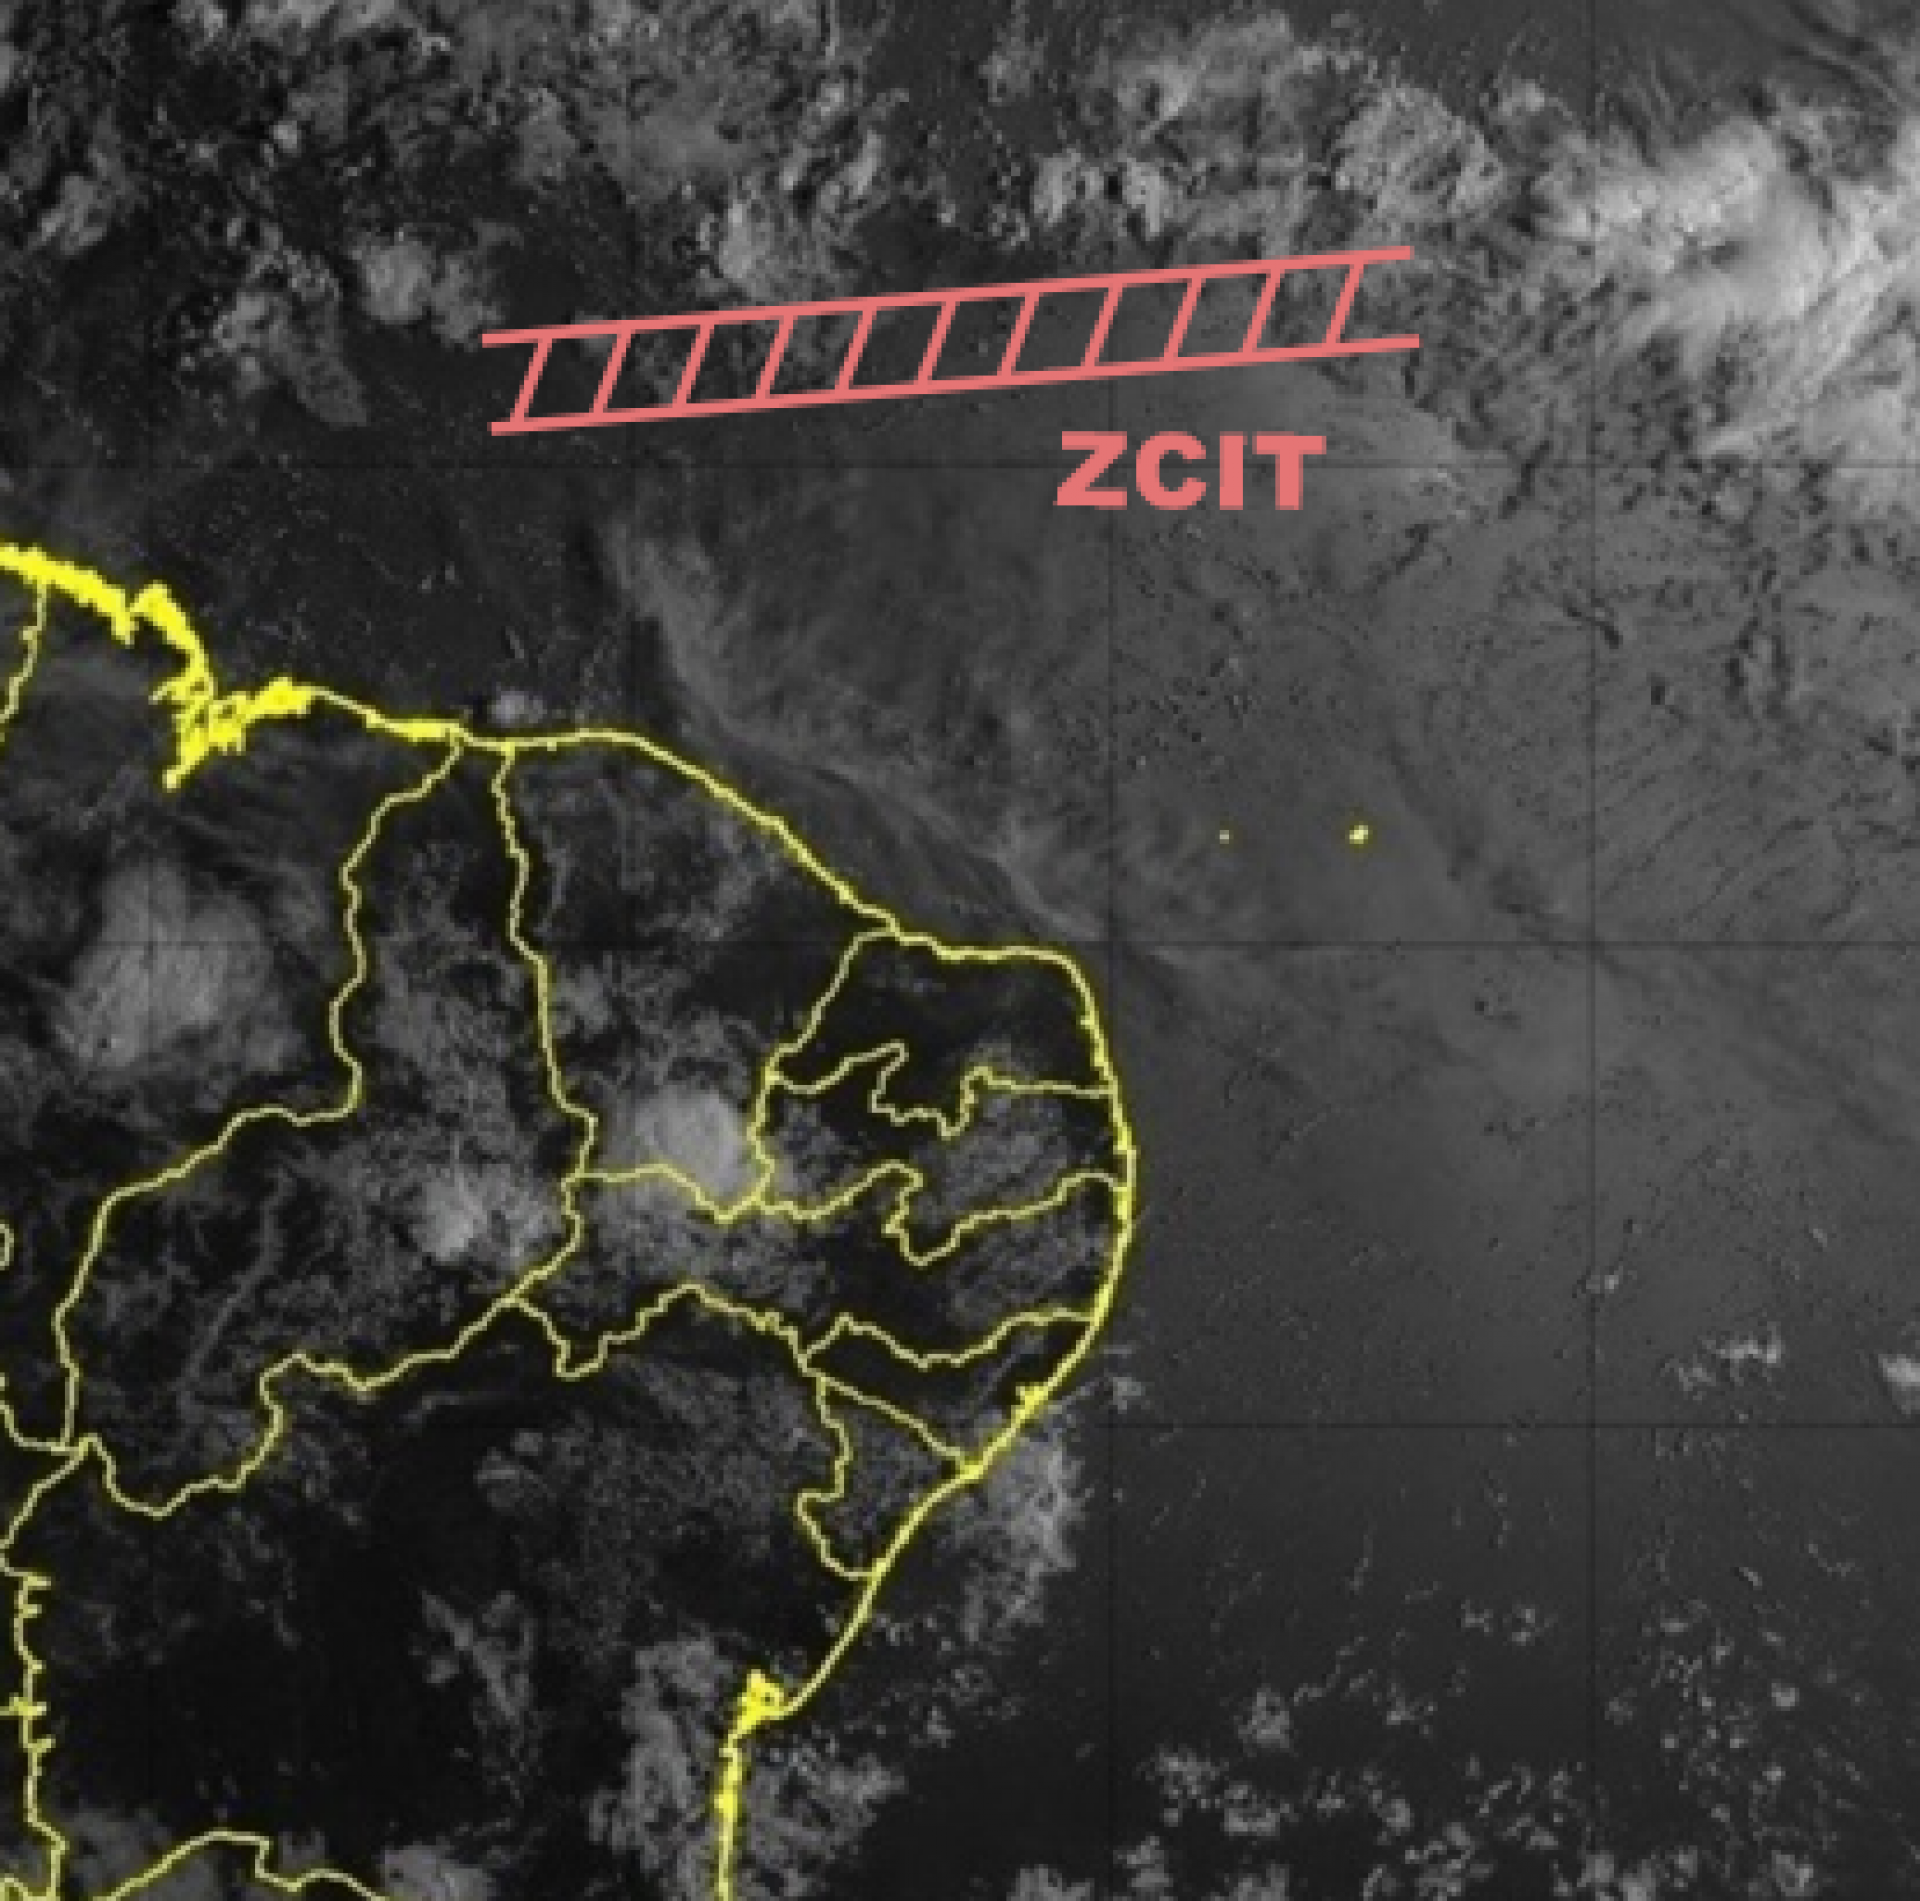 Imagem de satélite (GOES-16) da Fundação Cearense de Meteorologia e Recursos Hídricos (Funceme) deste sábado, 13, às 7h30min